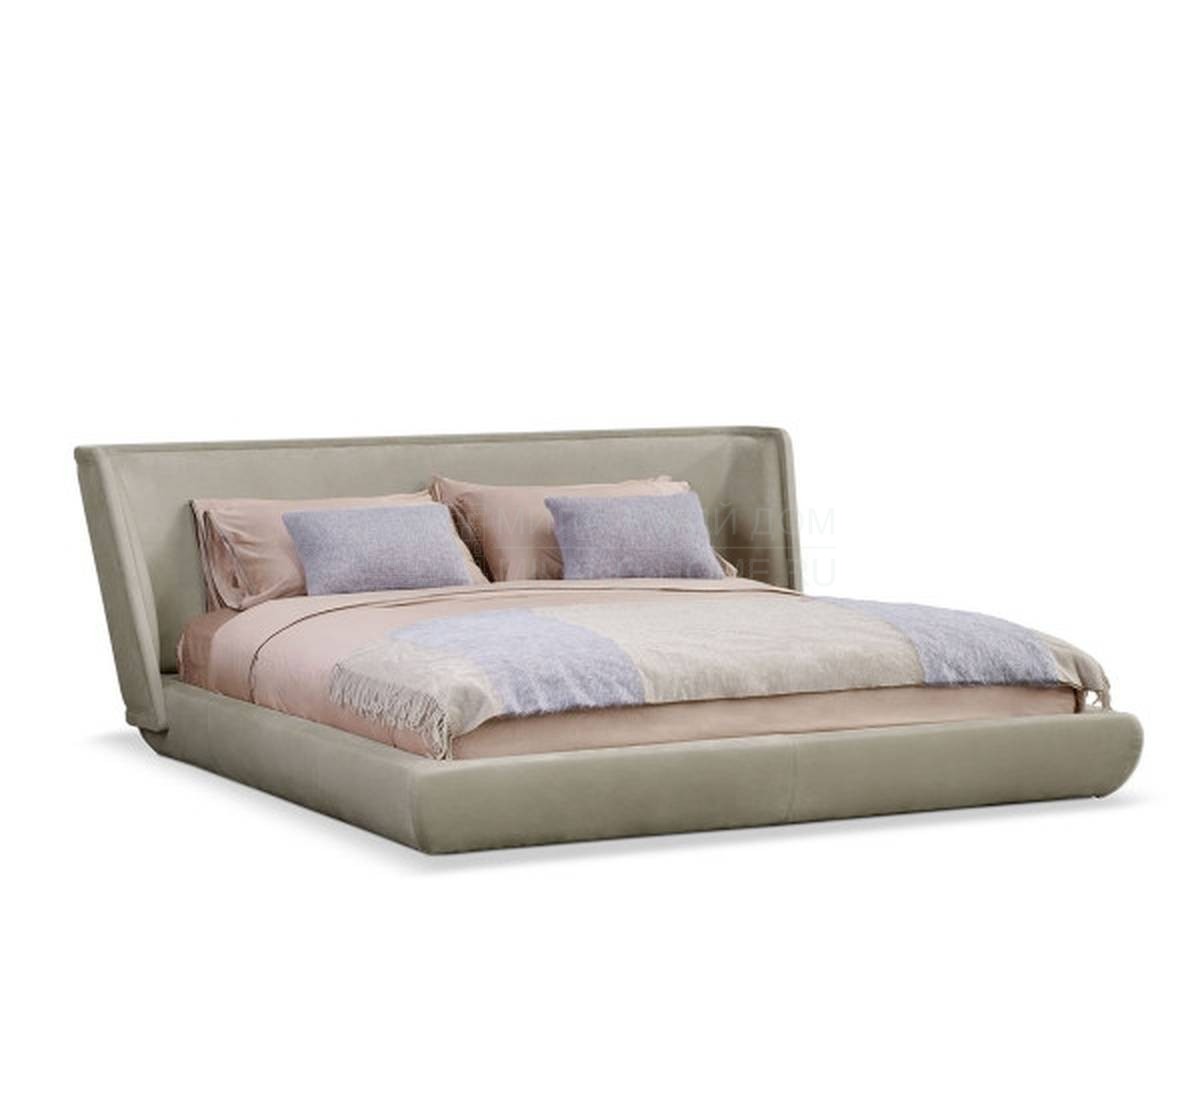 Кровать с мягким изголовьем Metropolis plain bed из Италии фабрики BAXTER